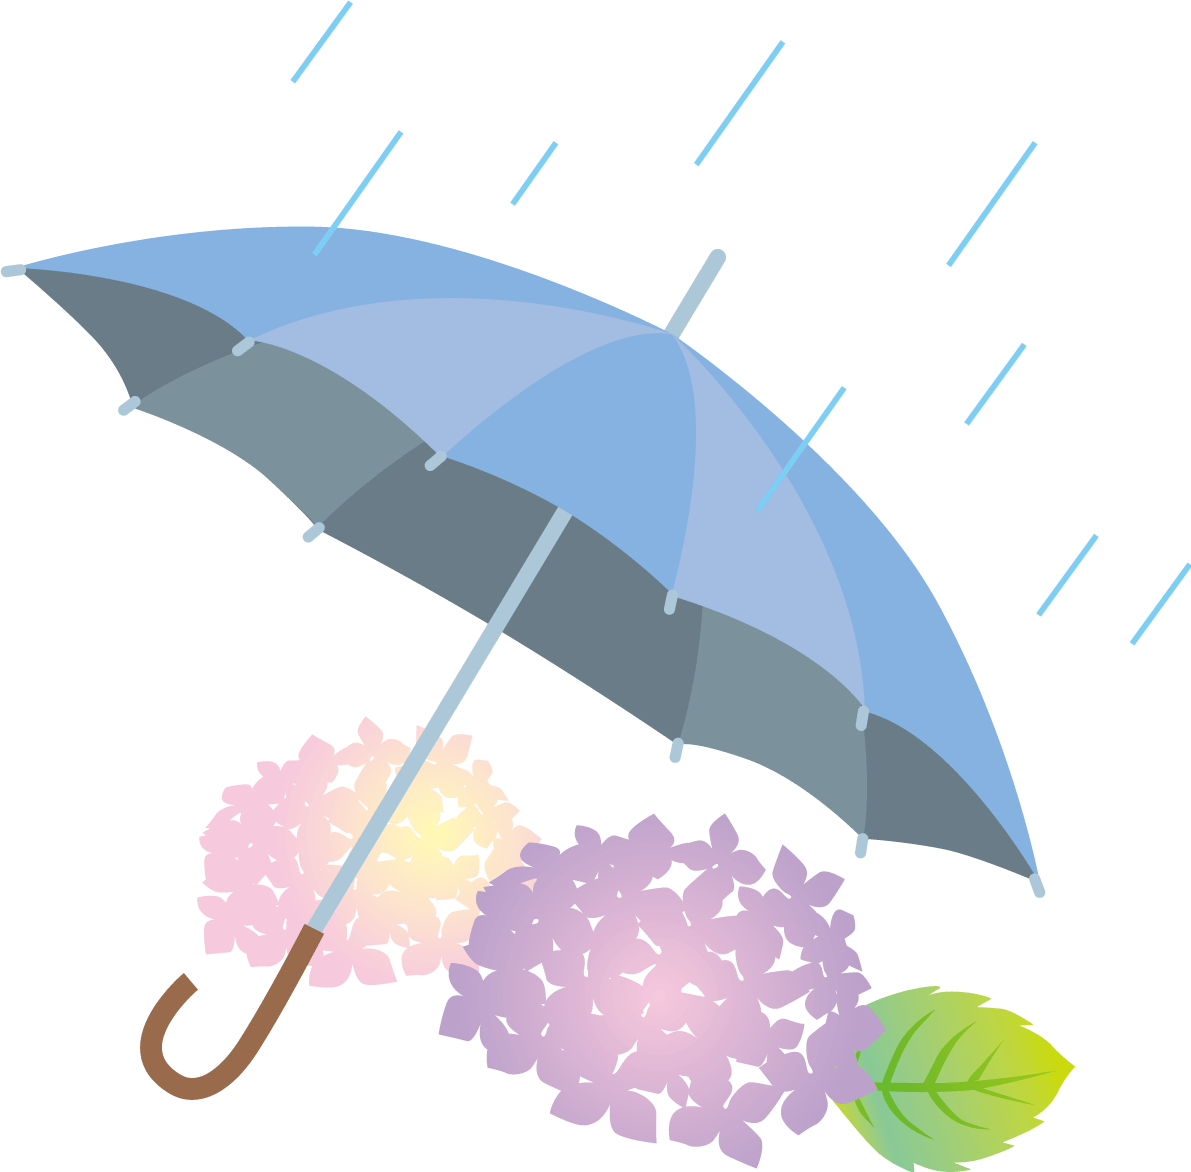 雨とあじさいと青い傘のかわいい梅雨 イラスト素材 超多くの無料かわいいイラスト素材